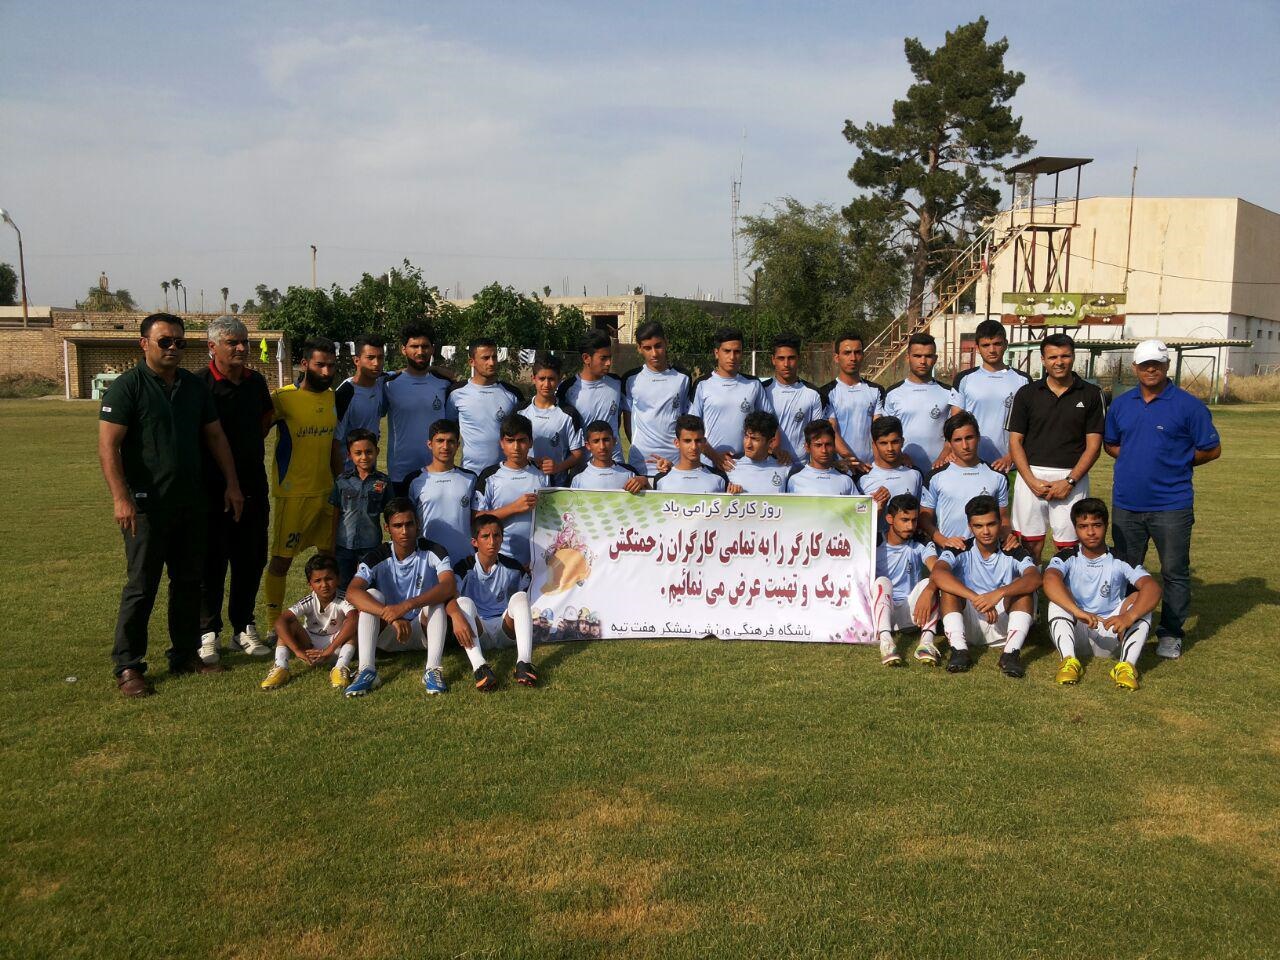 تیم نیشکر هفت تپه فینال جام کارگری شمال خوزستان را برد